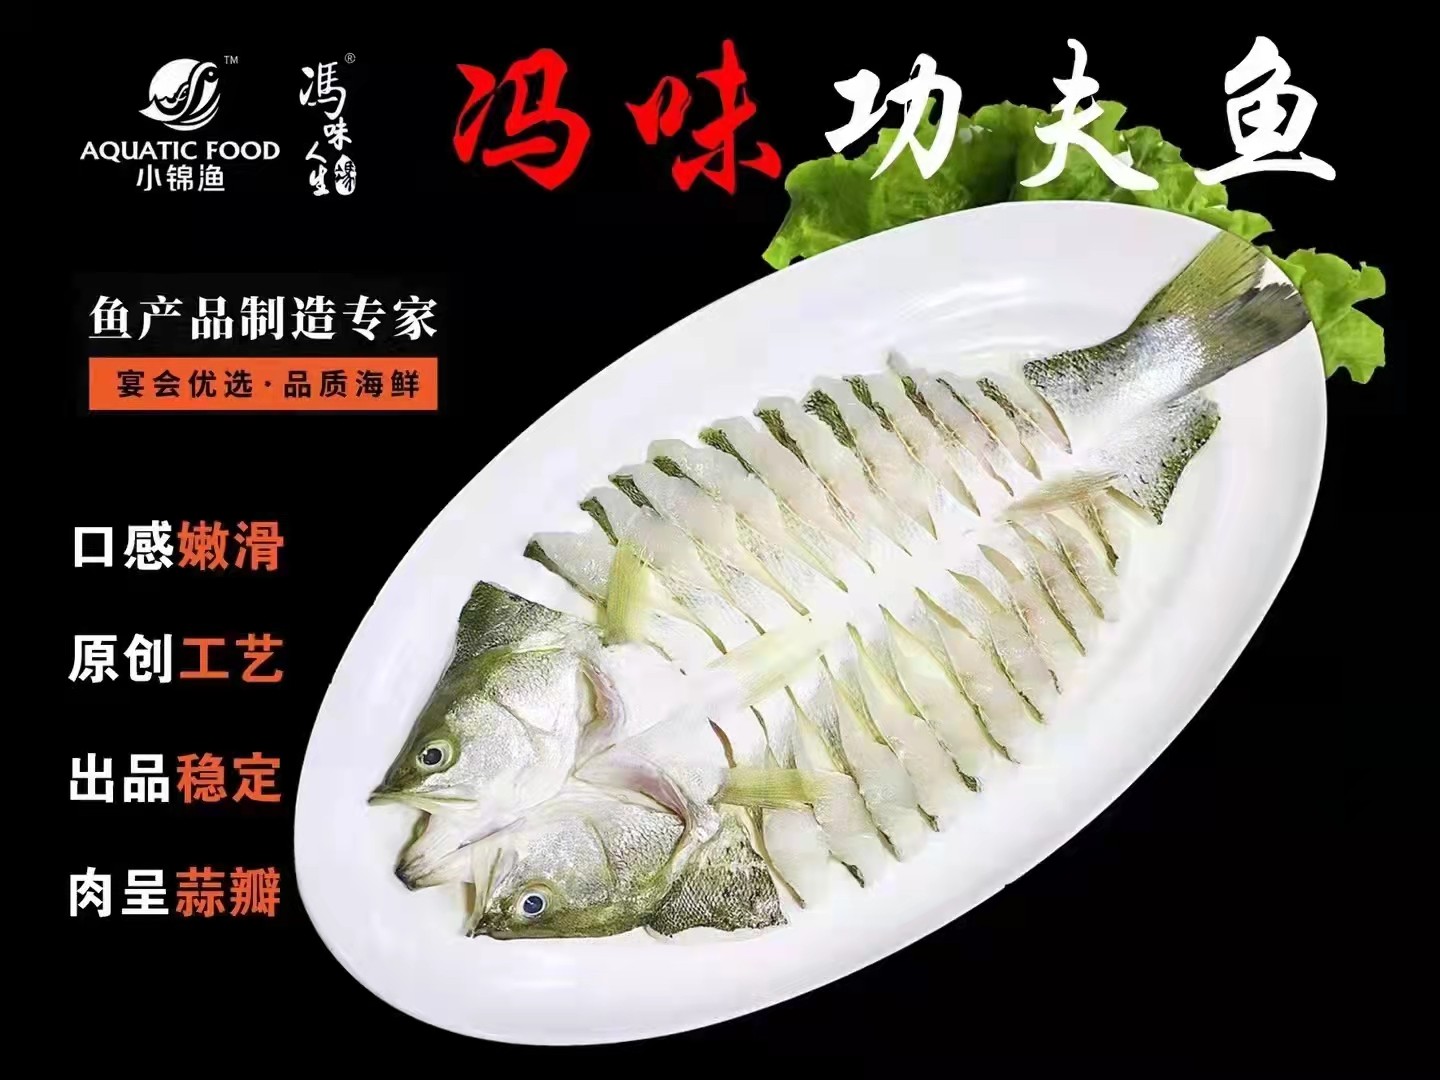 中式蒸鲜原味海鲜宣传海报psd分层素材 - 素材中国